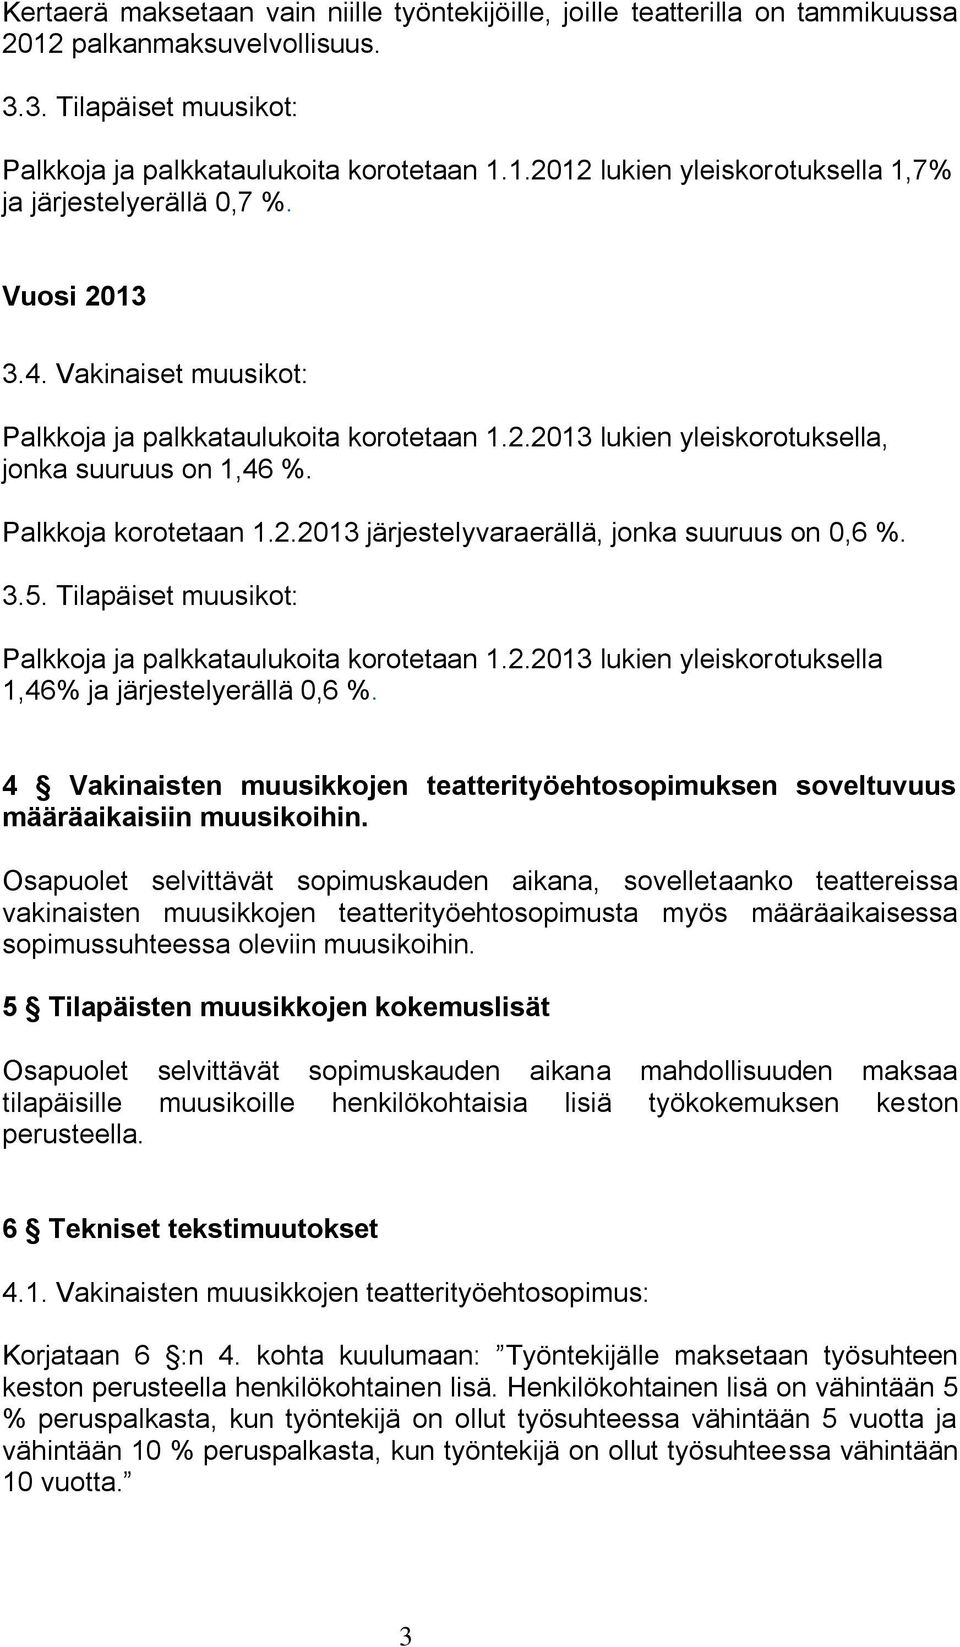 3.5. Tilapäiset muusikot: Palkkoja ja palkkataulukoita korotetaan 1.2.2013 lukien yleiskorotuksella 1,46% ja järjestelyerällä 0,6 %.